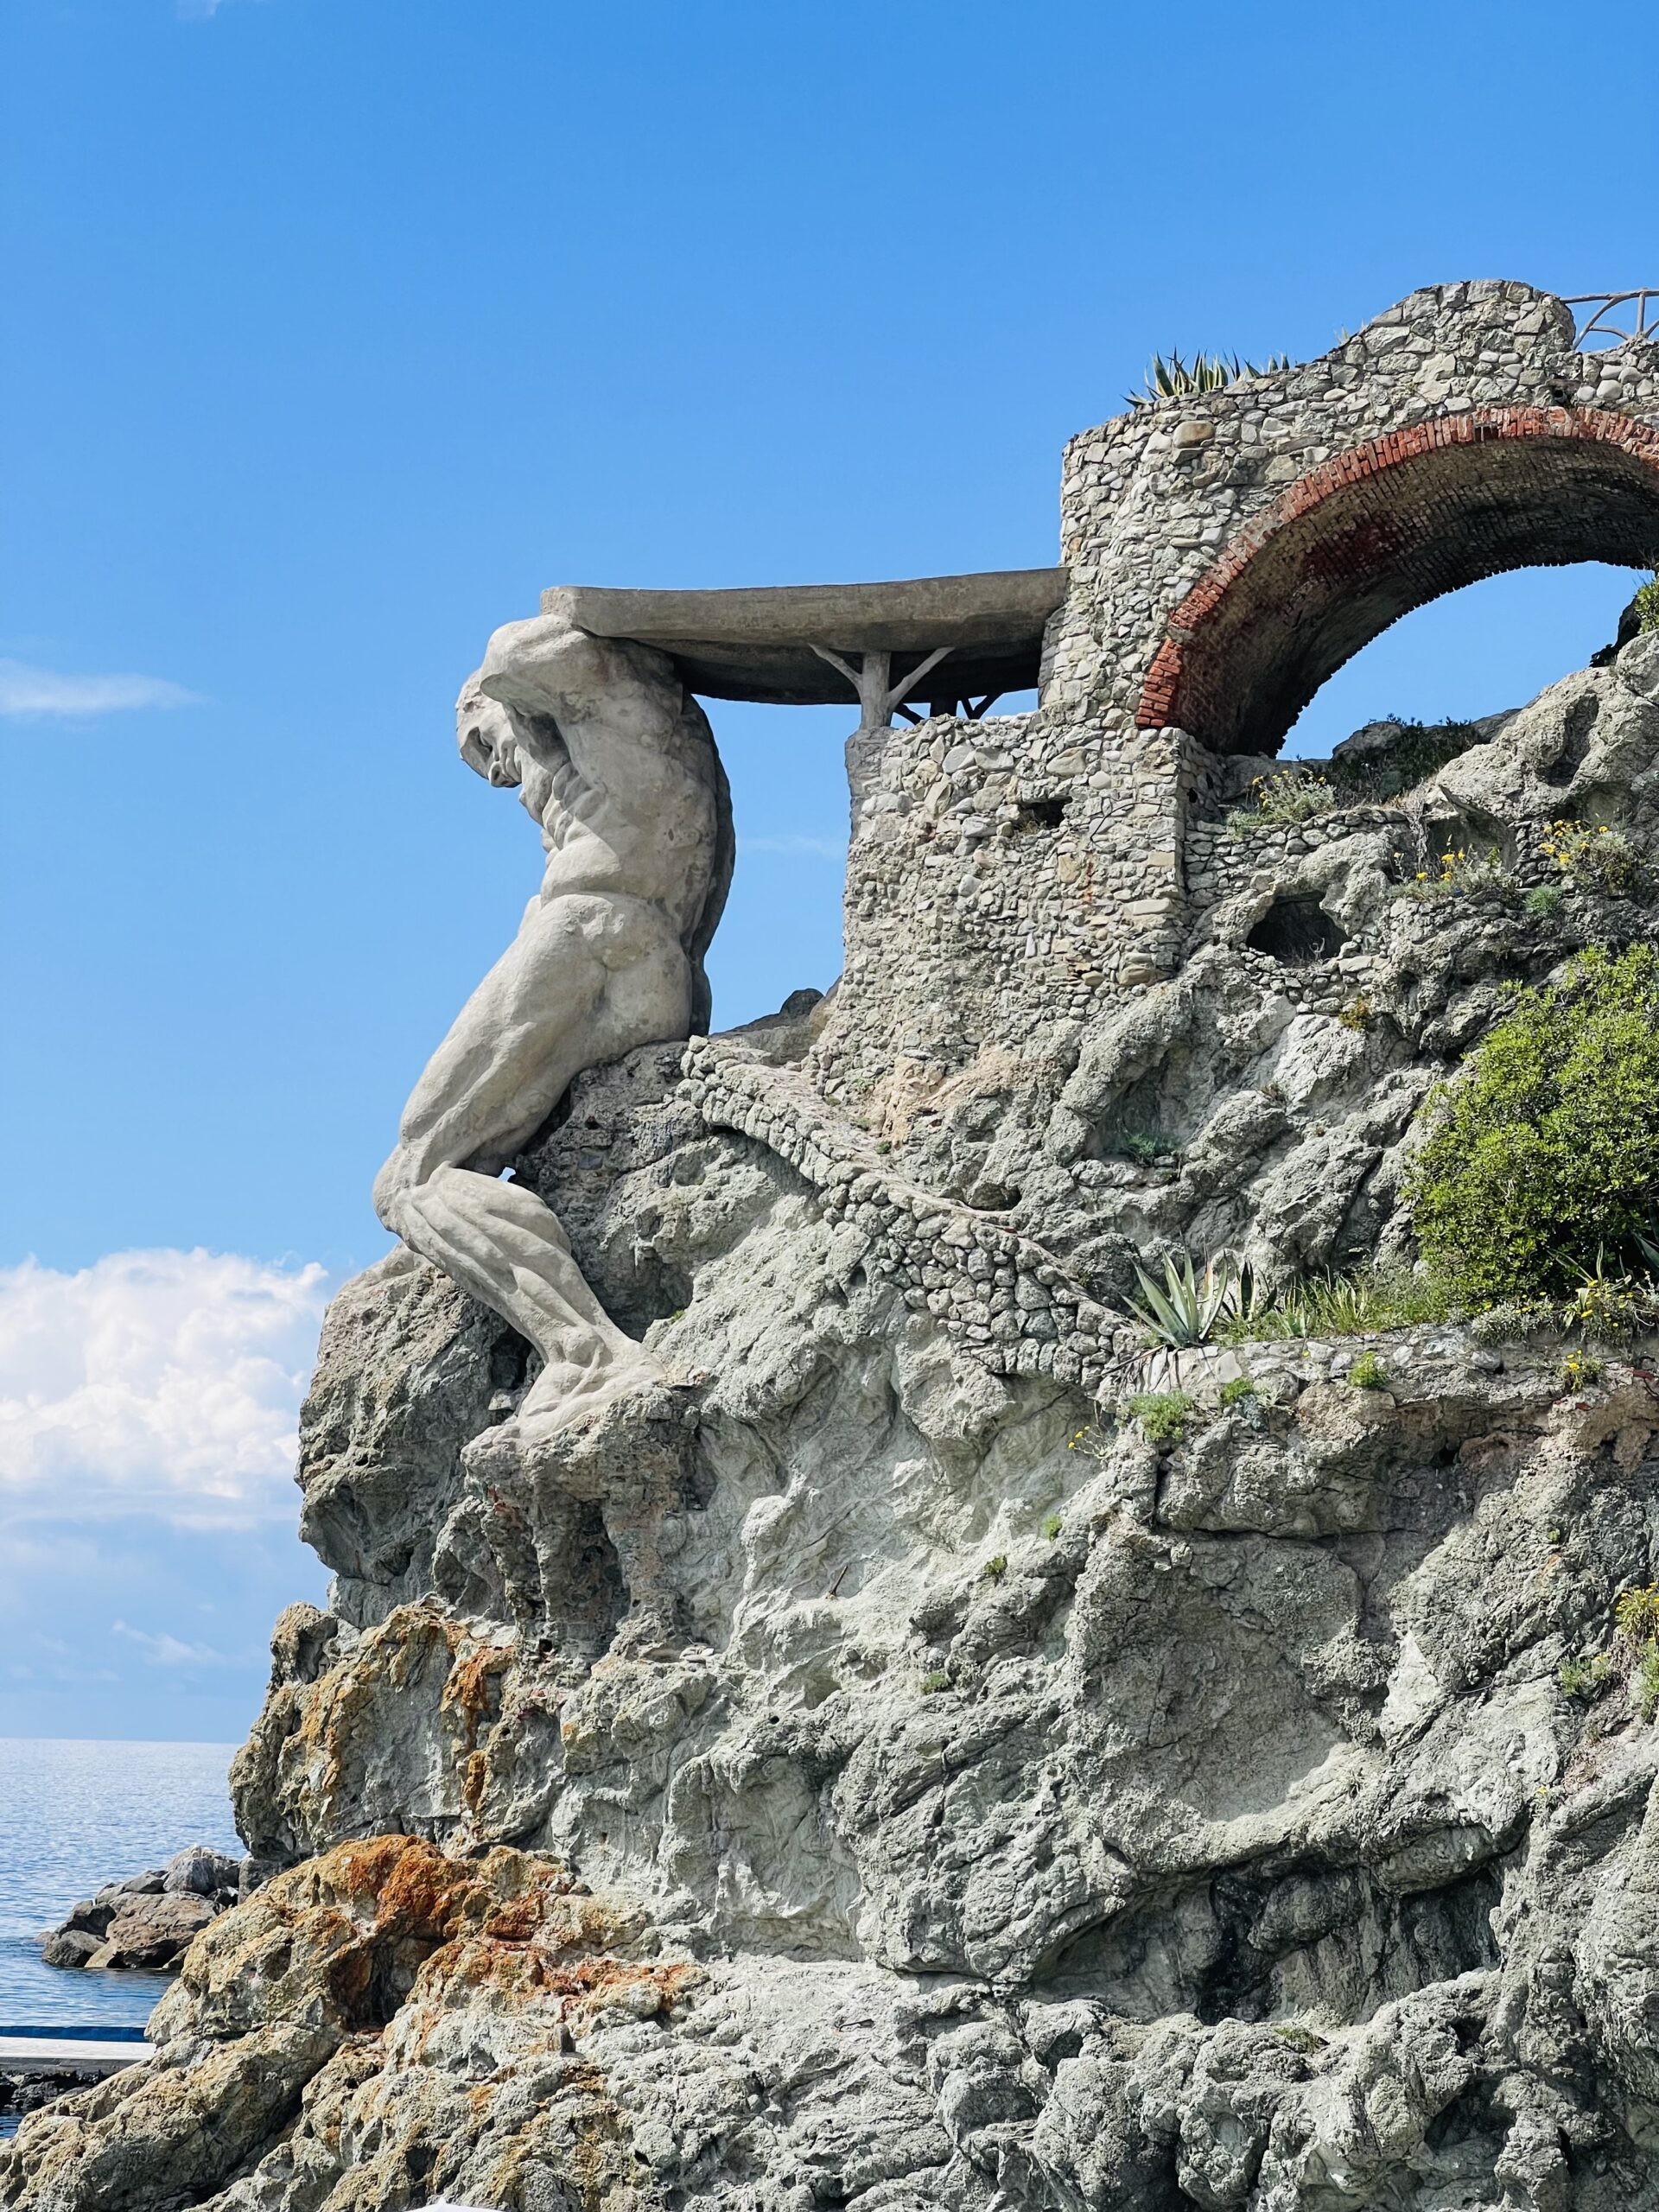 Spiaggia il Gigante, Monterosso dove e' rappresentata una statua enorme